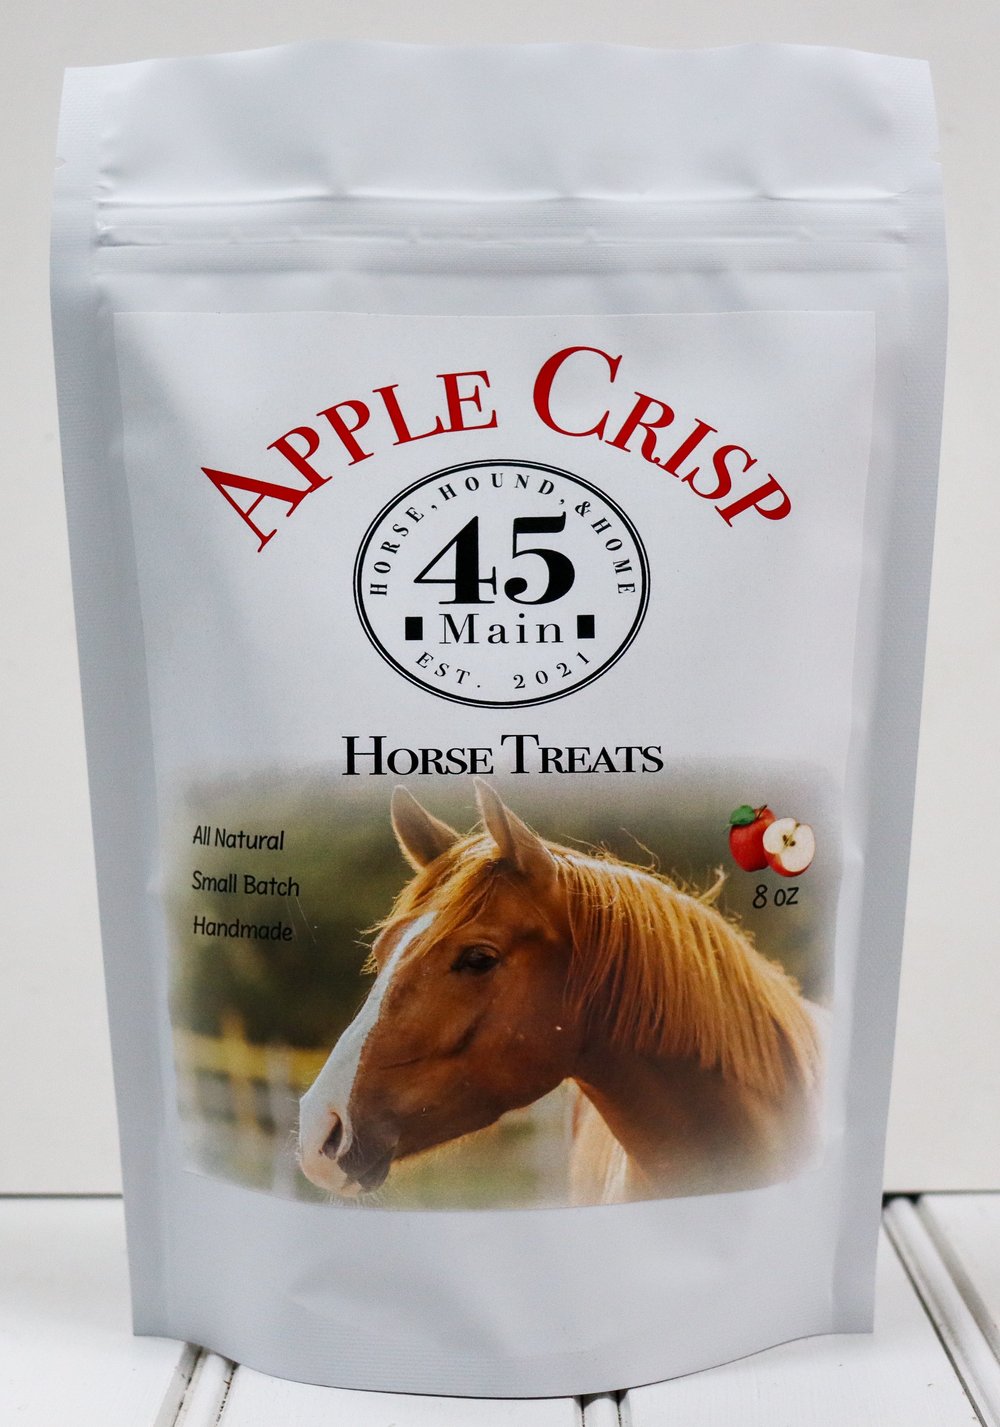 45 Main Apple Crisp Horse Treats